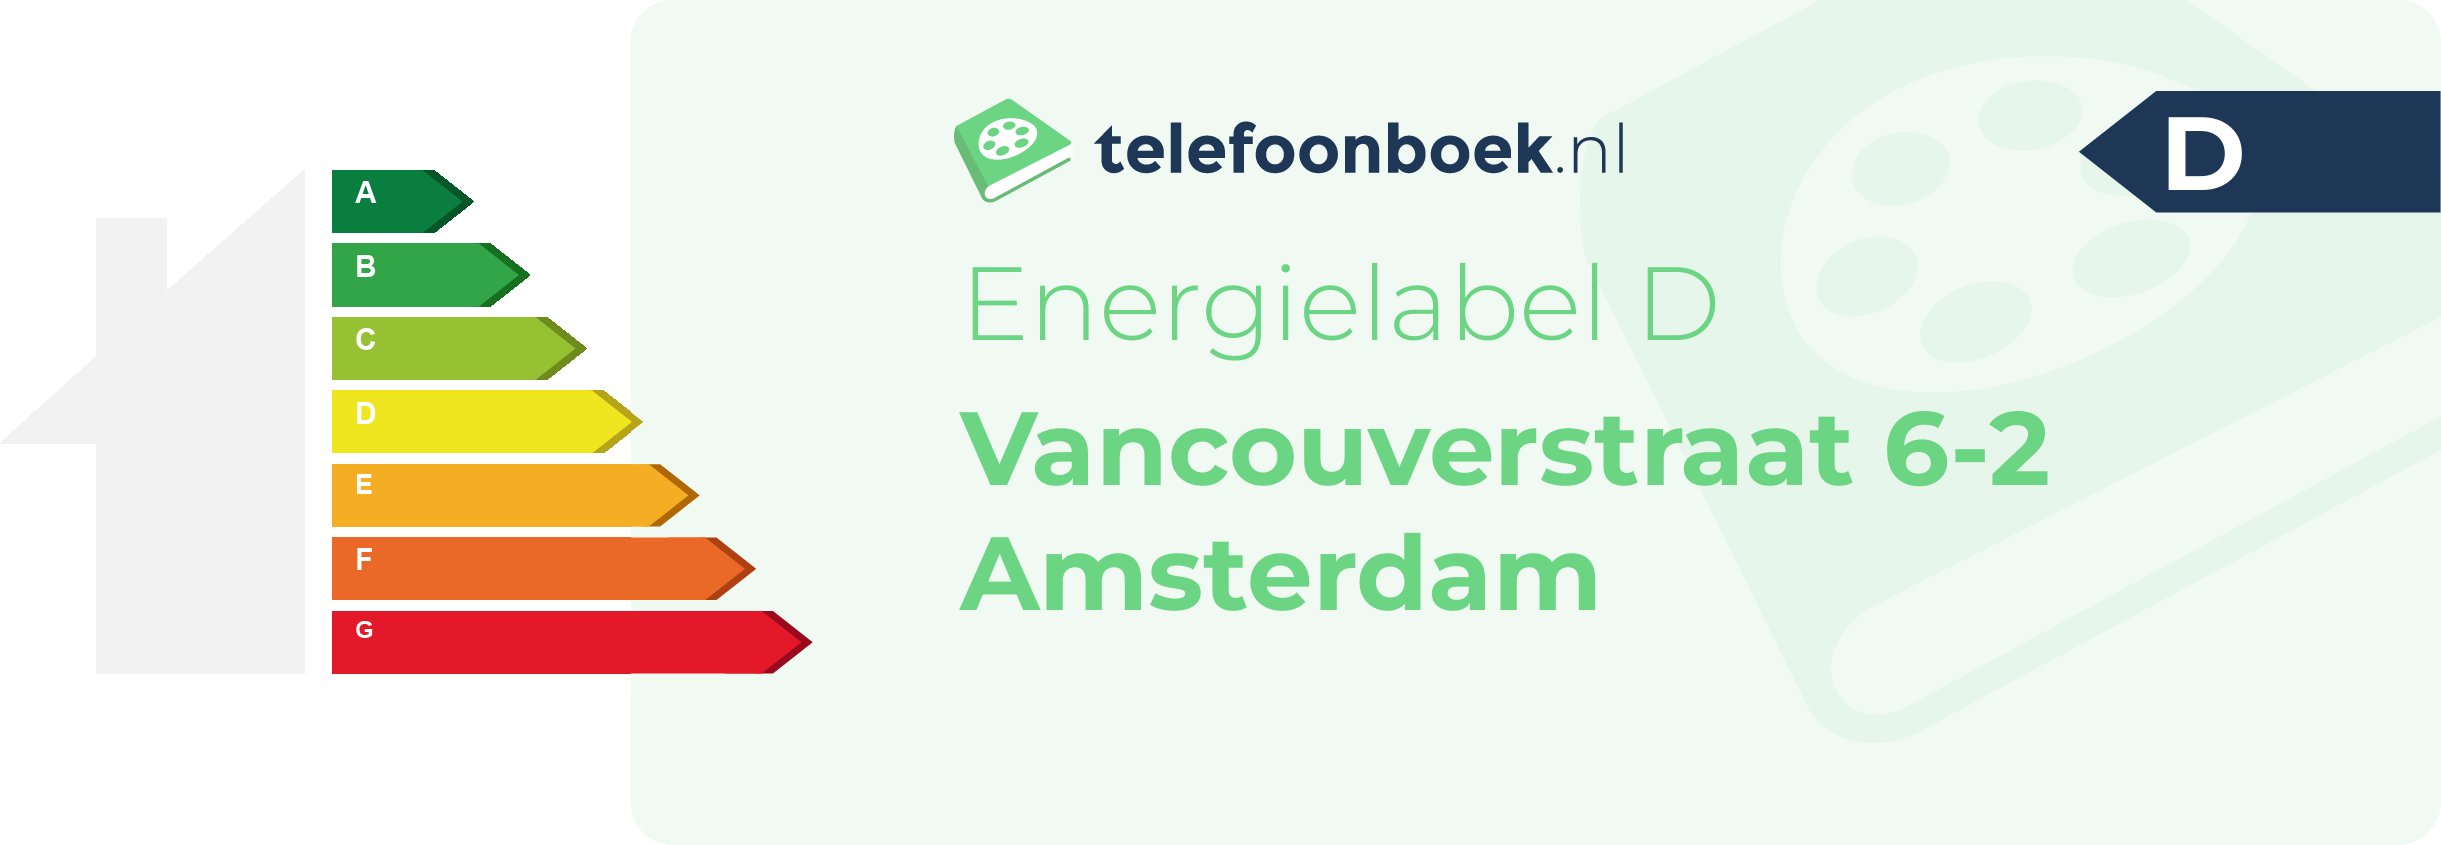 Energielabel Vancouverstraat 6-2 Amsterdam